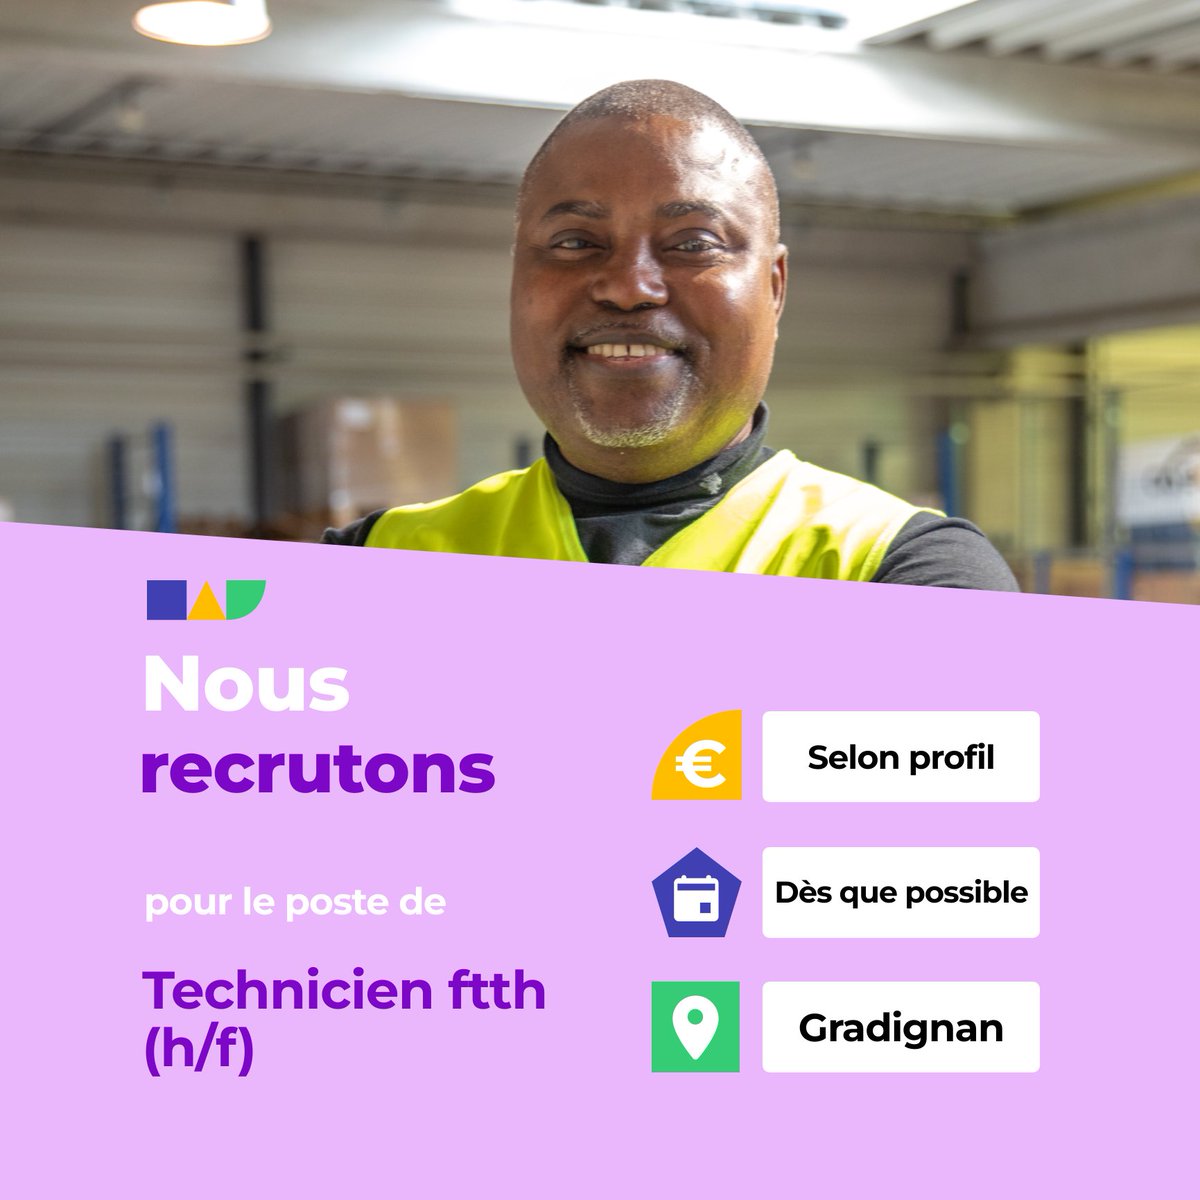 🛎️ Nouvelle offre d'emploi : Technicien  ftth (h/f)
🌎 Gradignan (33170)
📅 Démarrage dans les 7 prochains jours
👉 Plus d'infos : jobs.iziwork.com/fr/offre-emplo…
#recrutement #intérim #emploi #OffreEmploi #job #iziwork